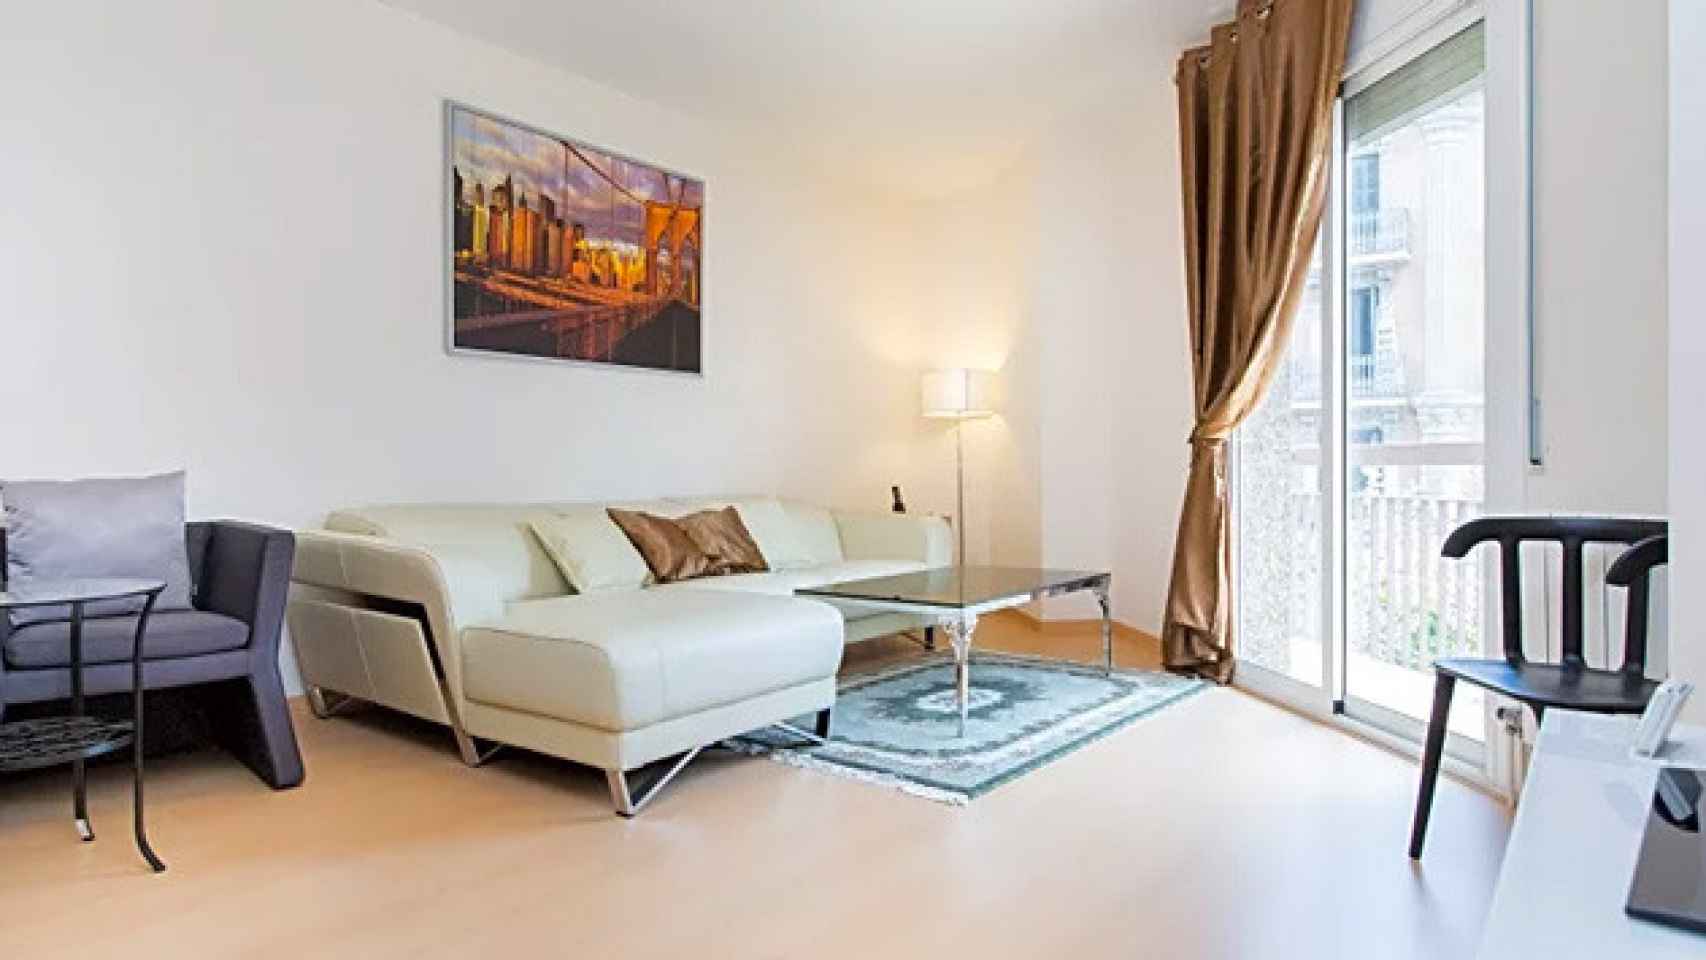 Uno de los apartamentos que Study Abroad Apartments ofrece en la calle Muntaner de Barcelona / CG